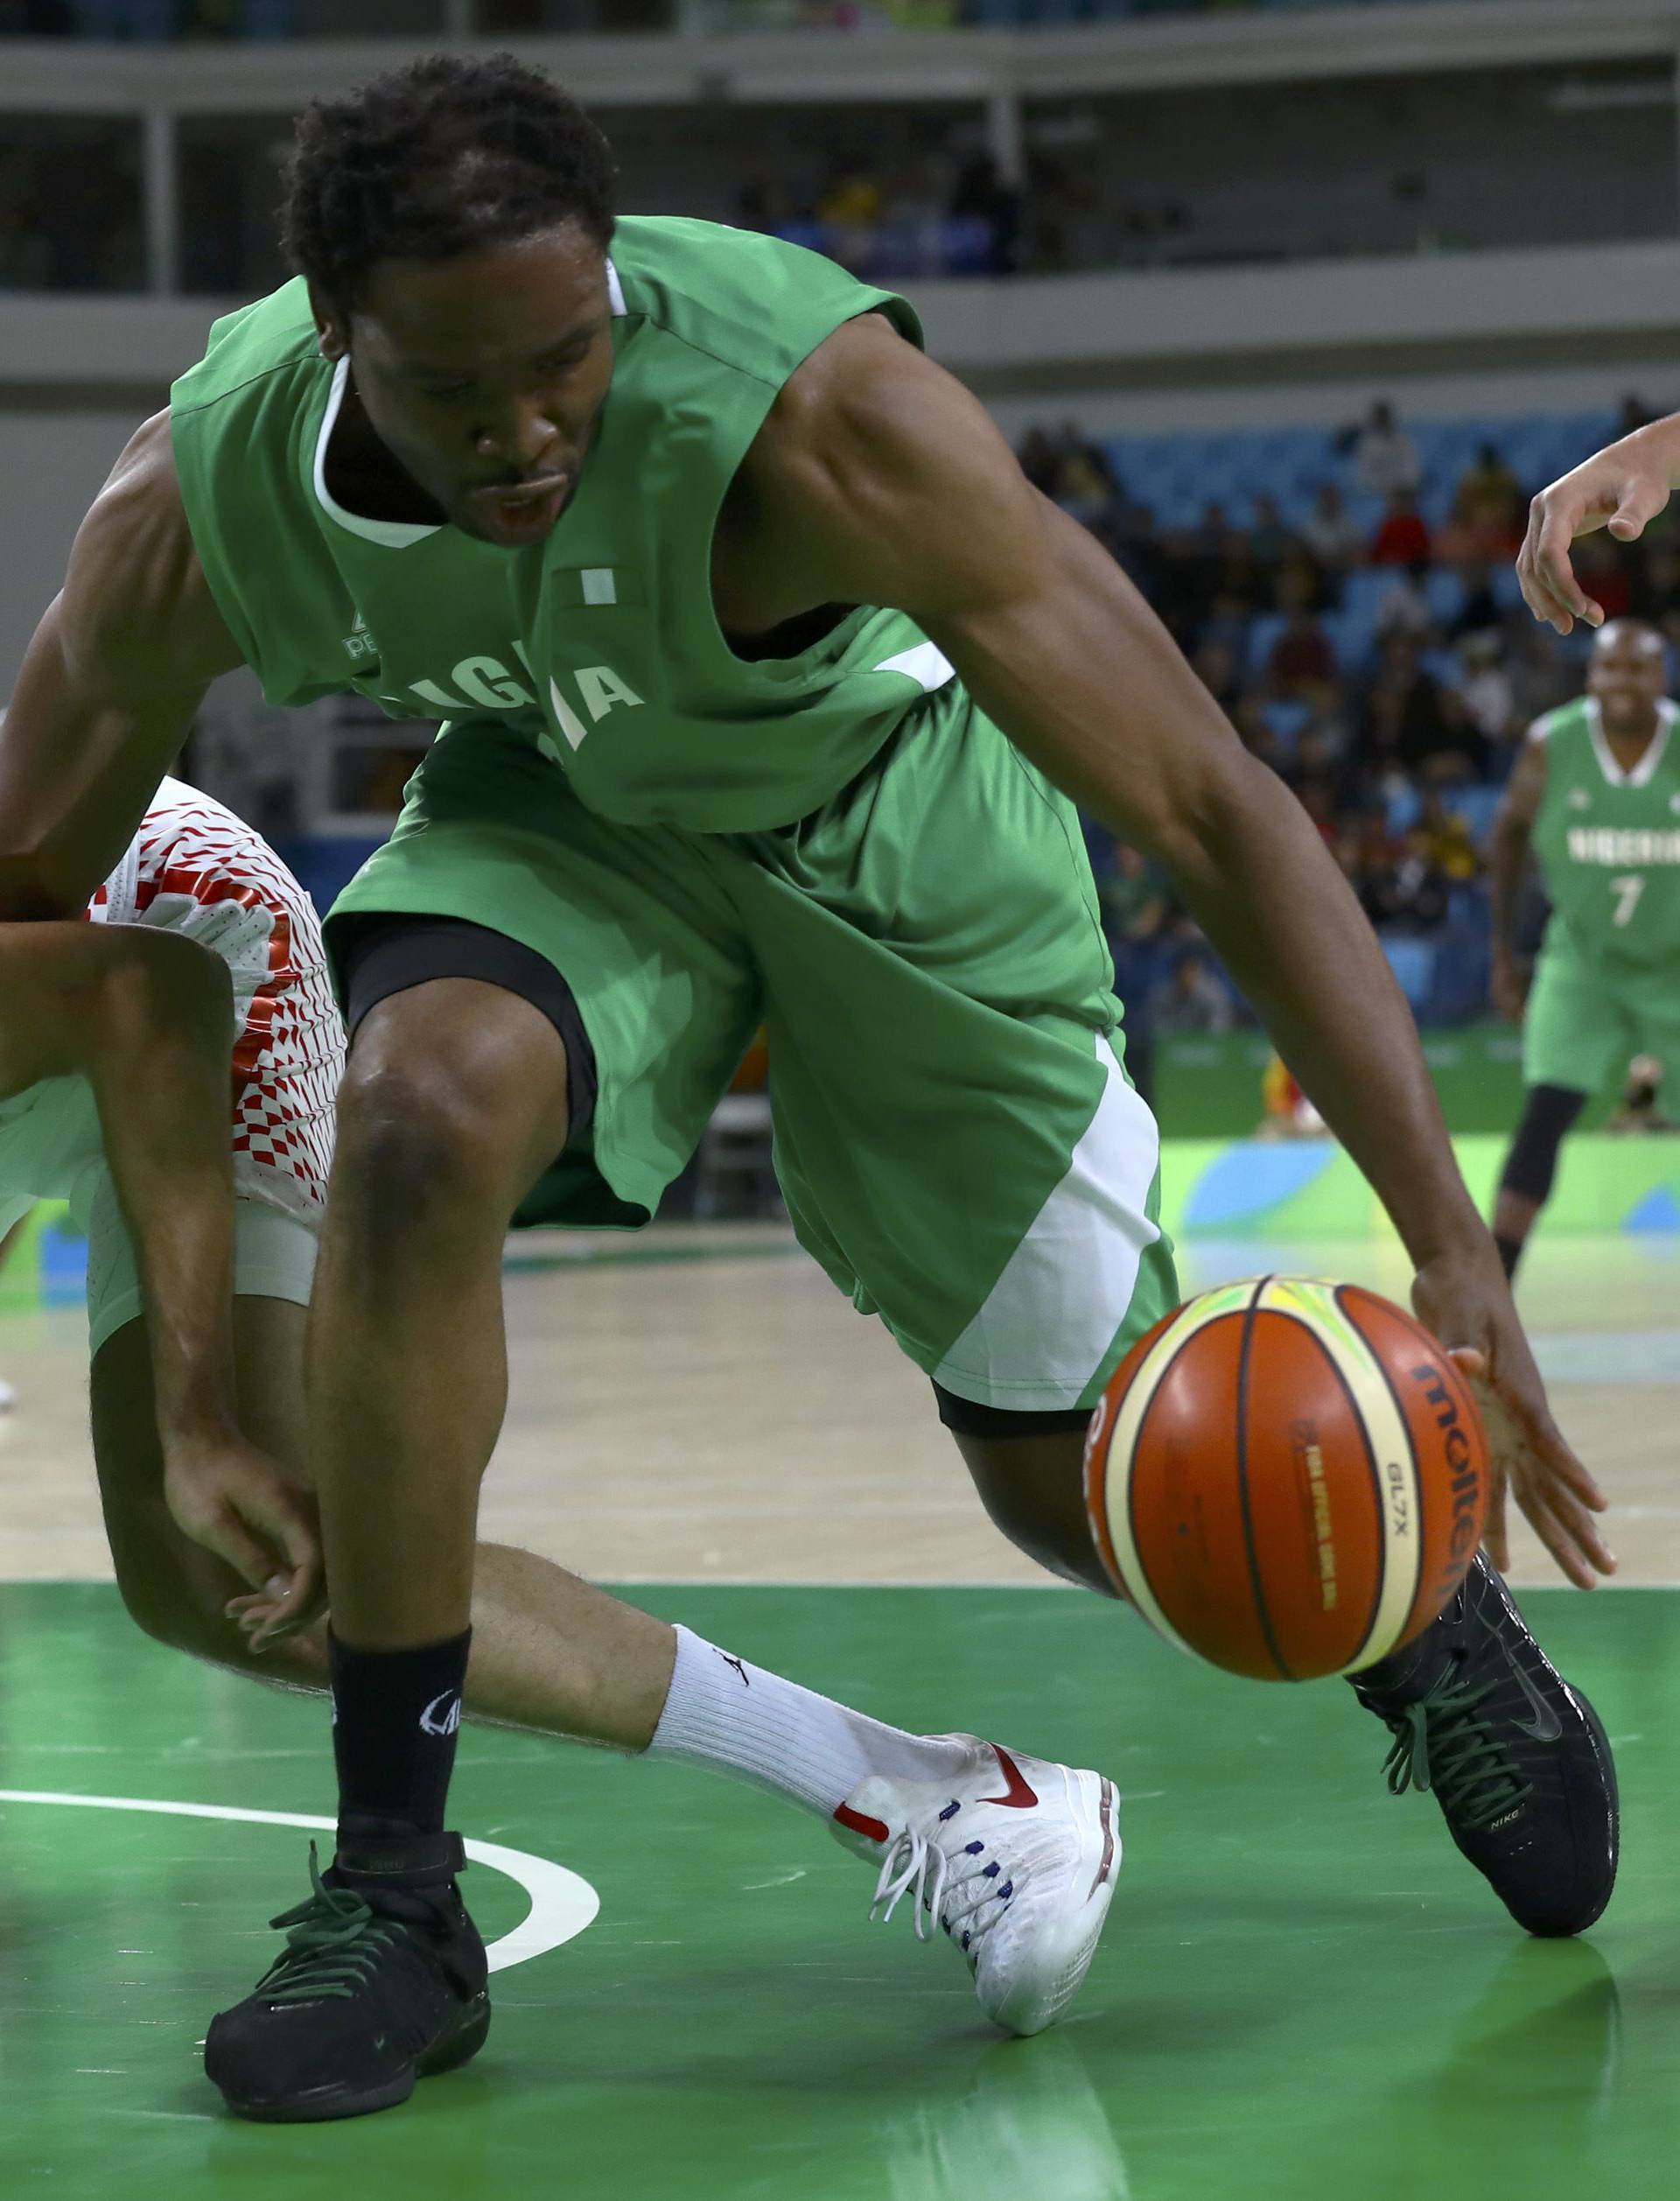 Basketball - Men's Preliminary Round Group B Croatia v Nigeria